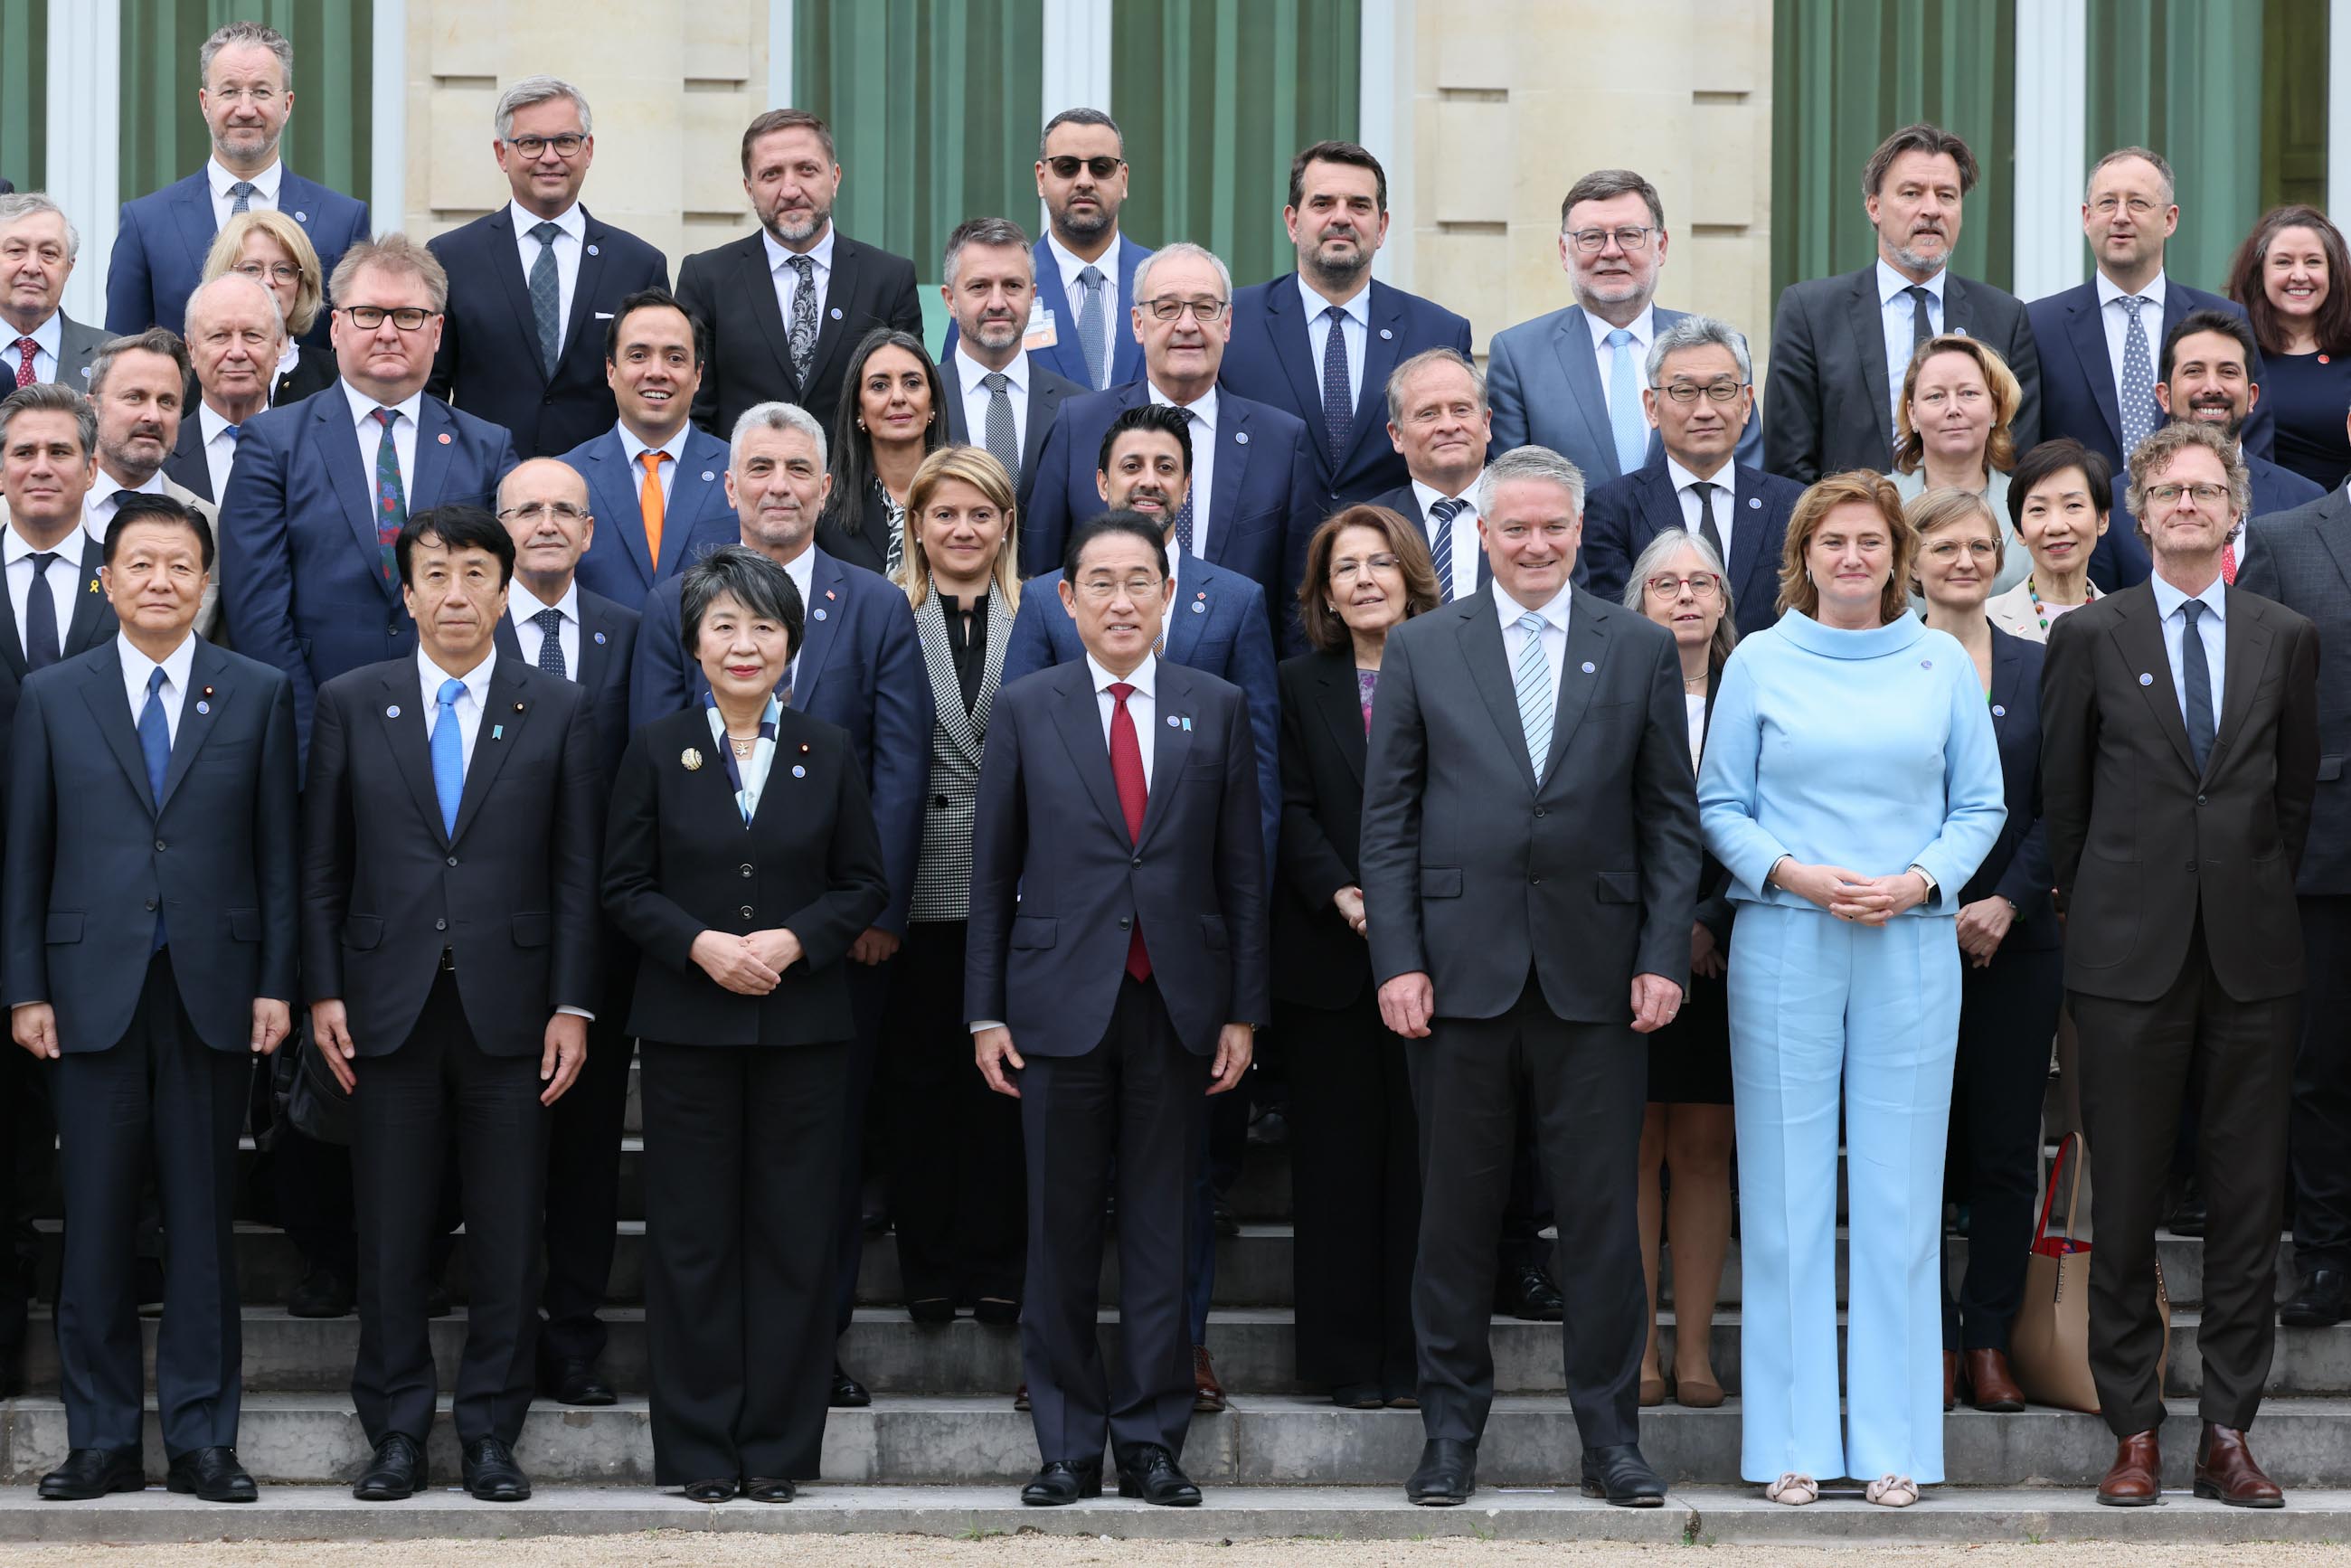 OECD Commemorative Photo (2)